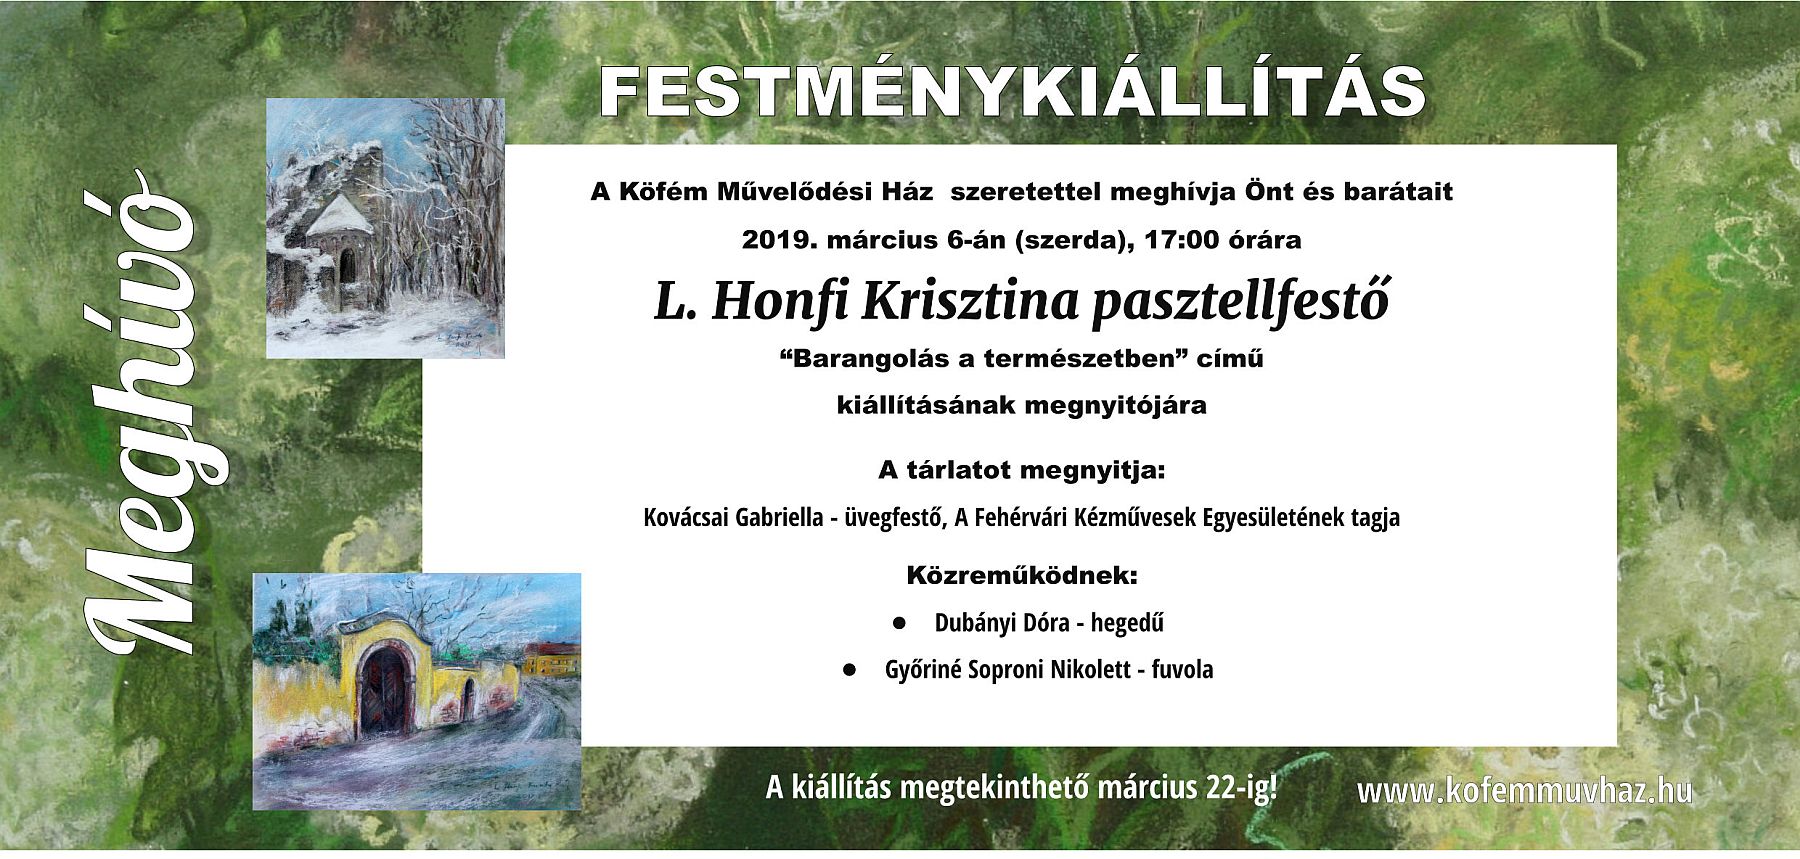 Barangolás a természetben - L. Honfi Krisztina tárlata a Köfém Művelődési Házban